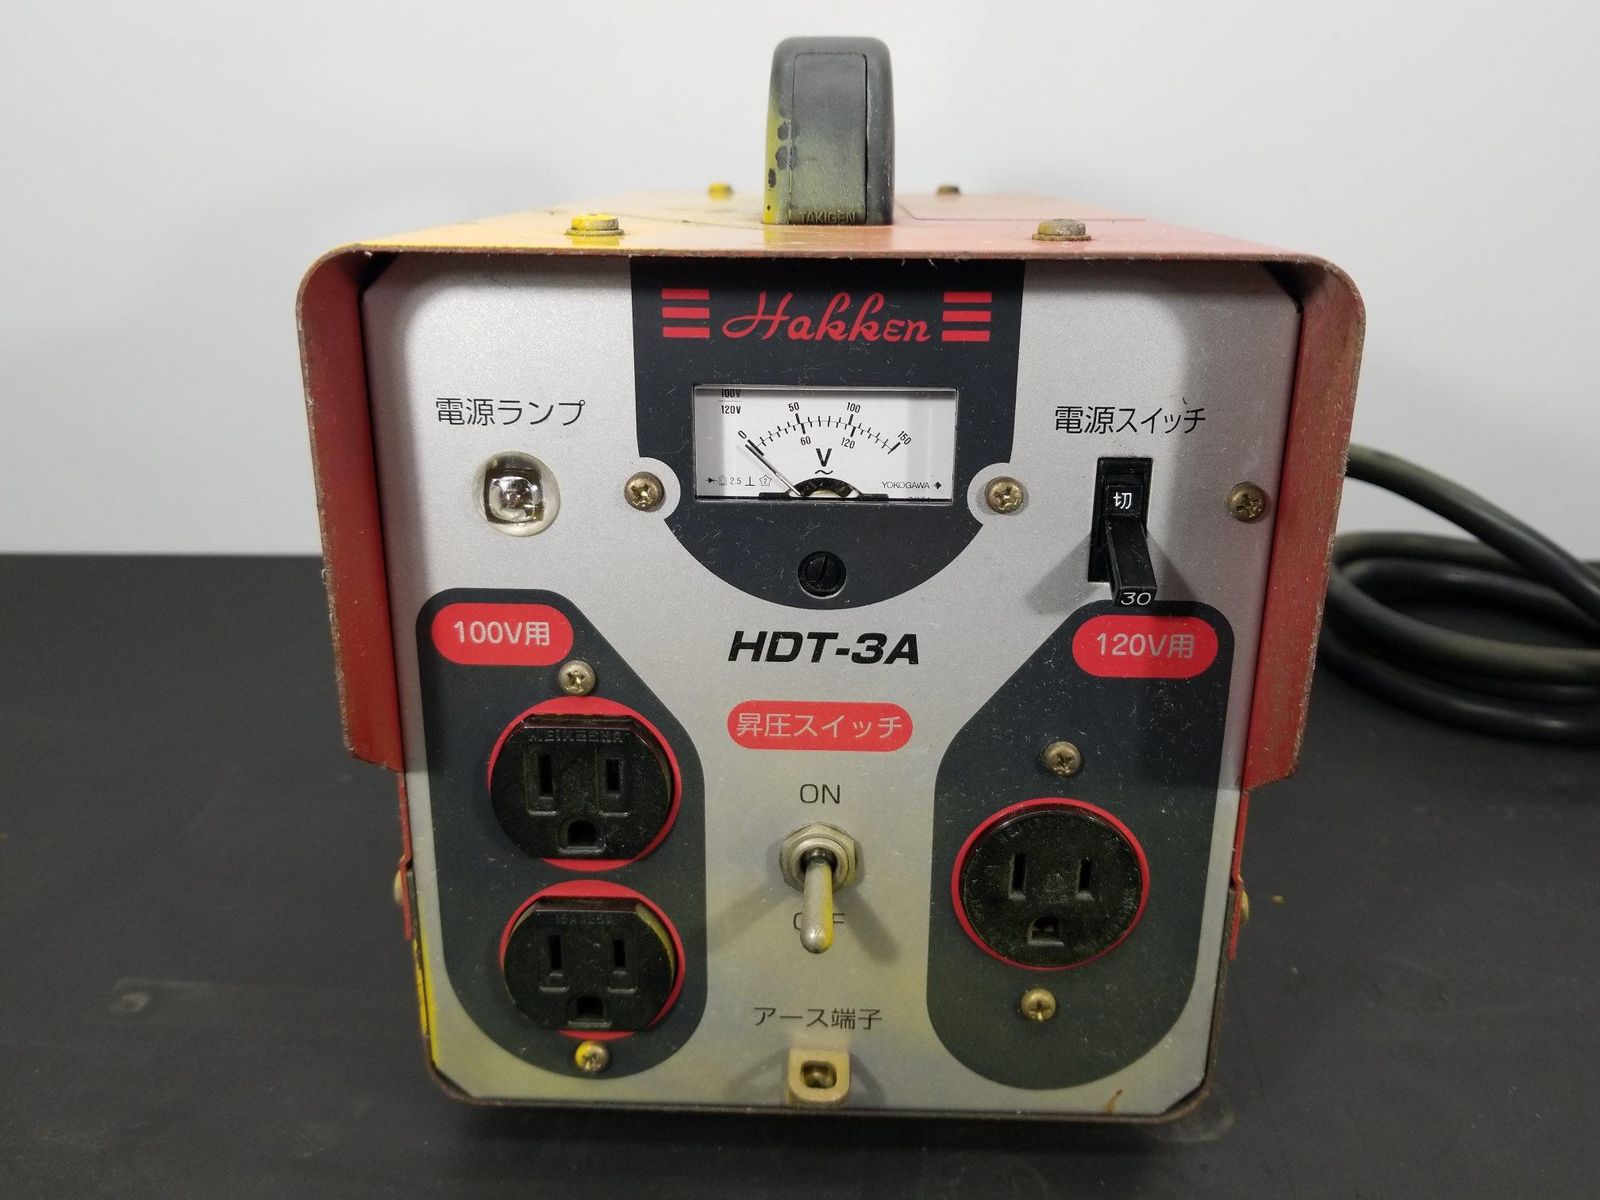 昇降圧兼用トランス 変圧器 HDT-3A ハッケン コンセック A4961G12 